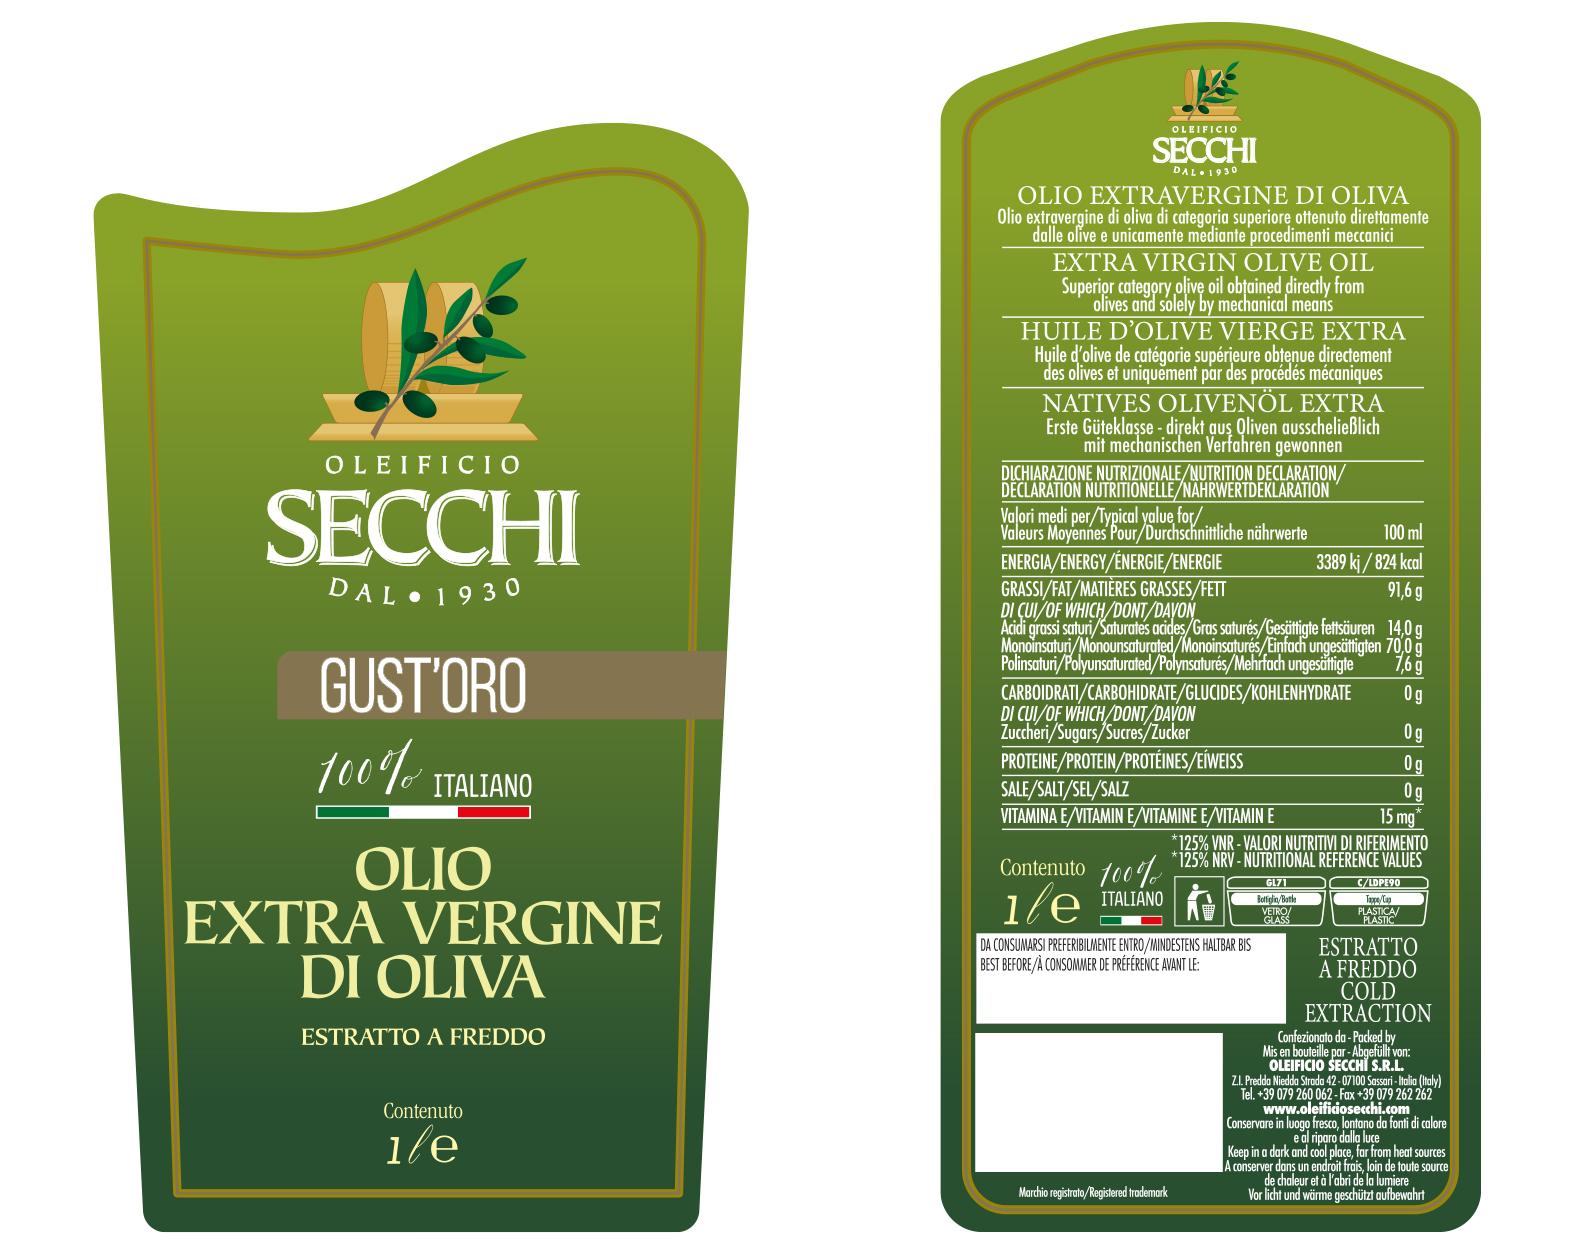 gustoro-oleificio-secchi-etichetta.jpg